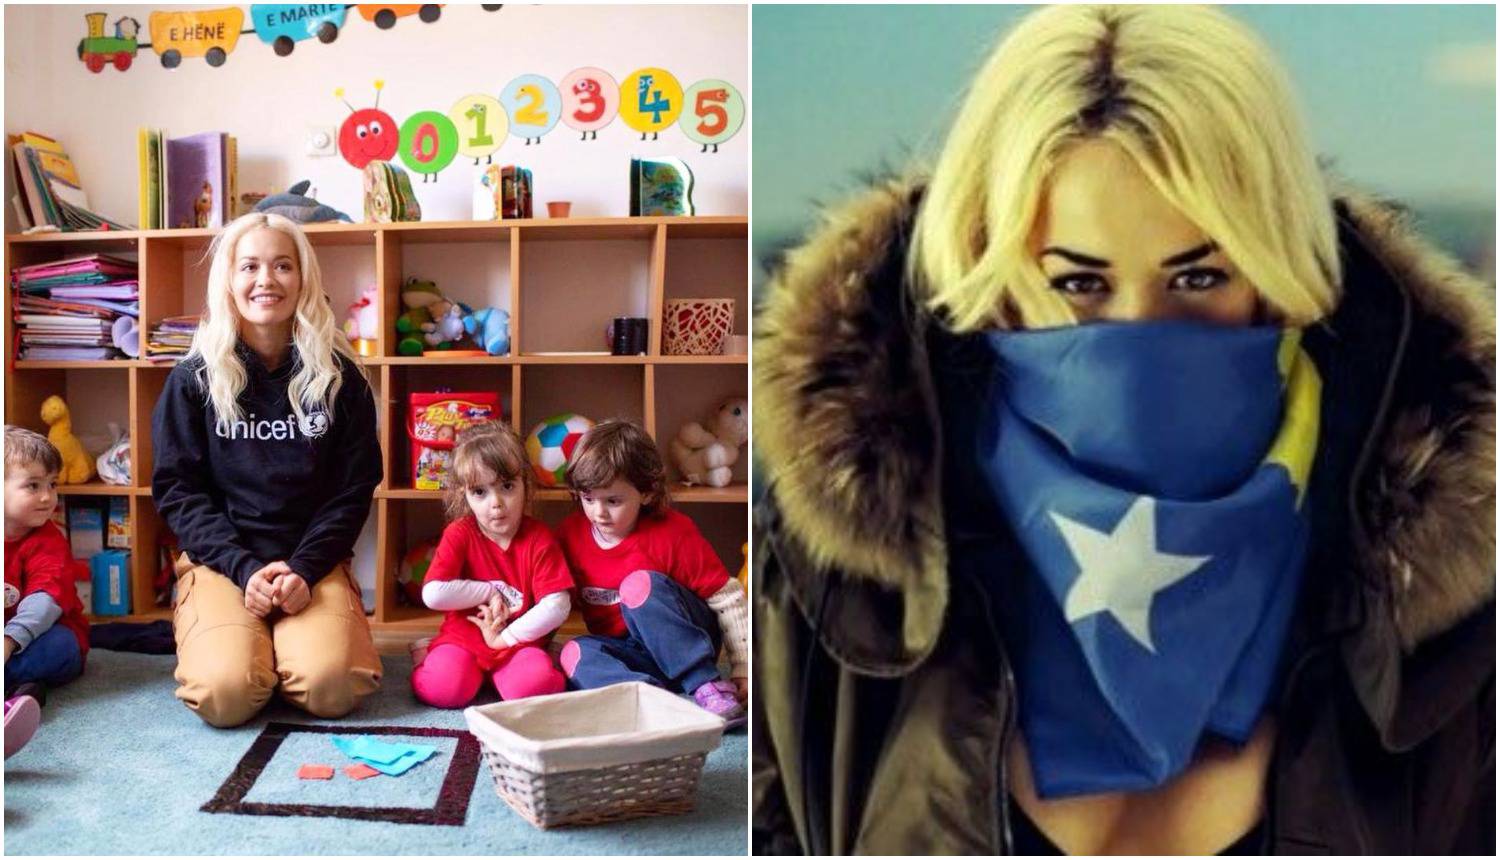 Rita Ora stigla kući: Došla sam na Kosovo pomoći svom narodu